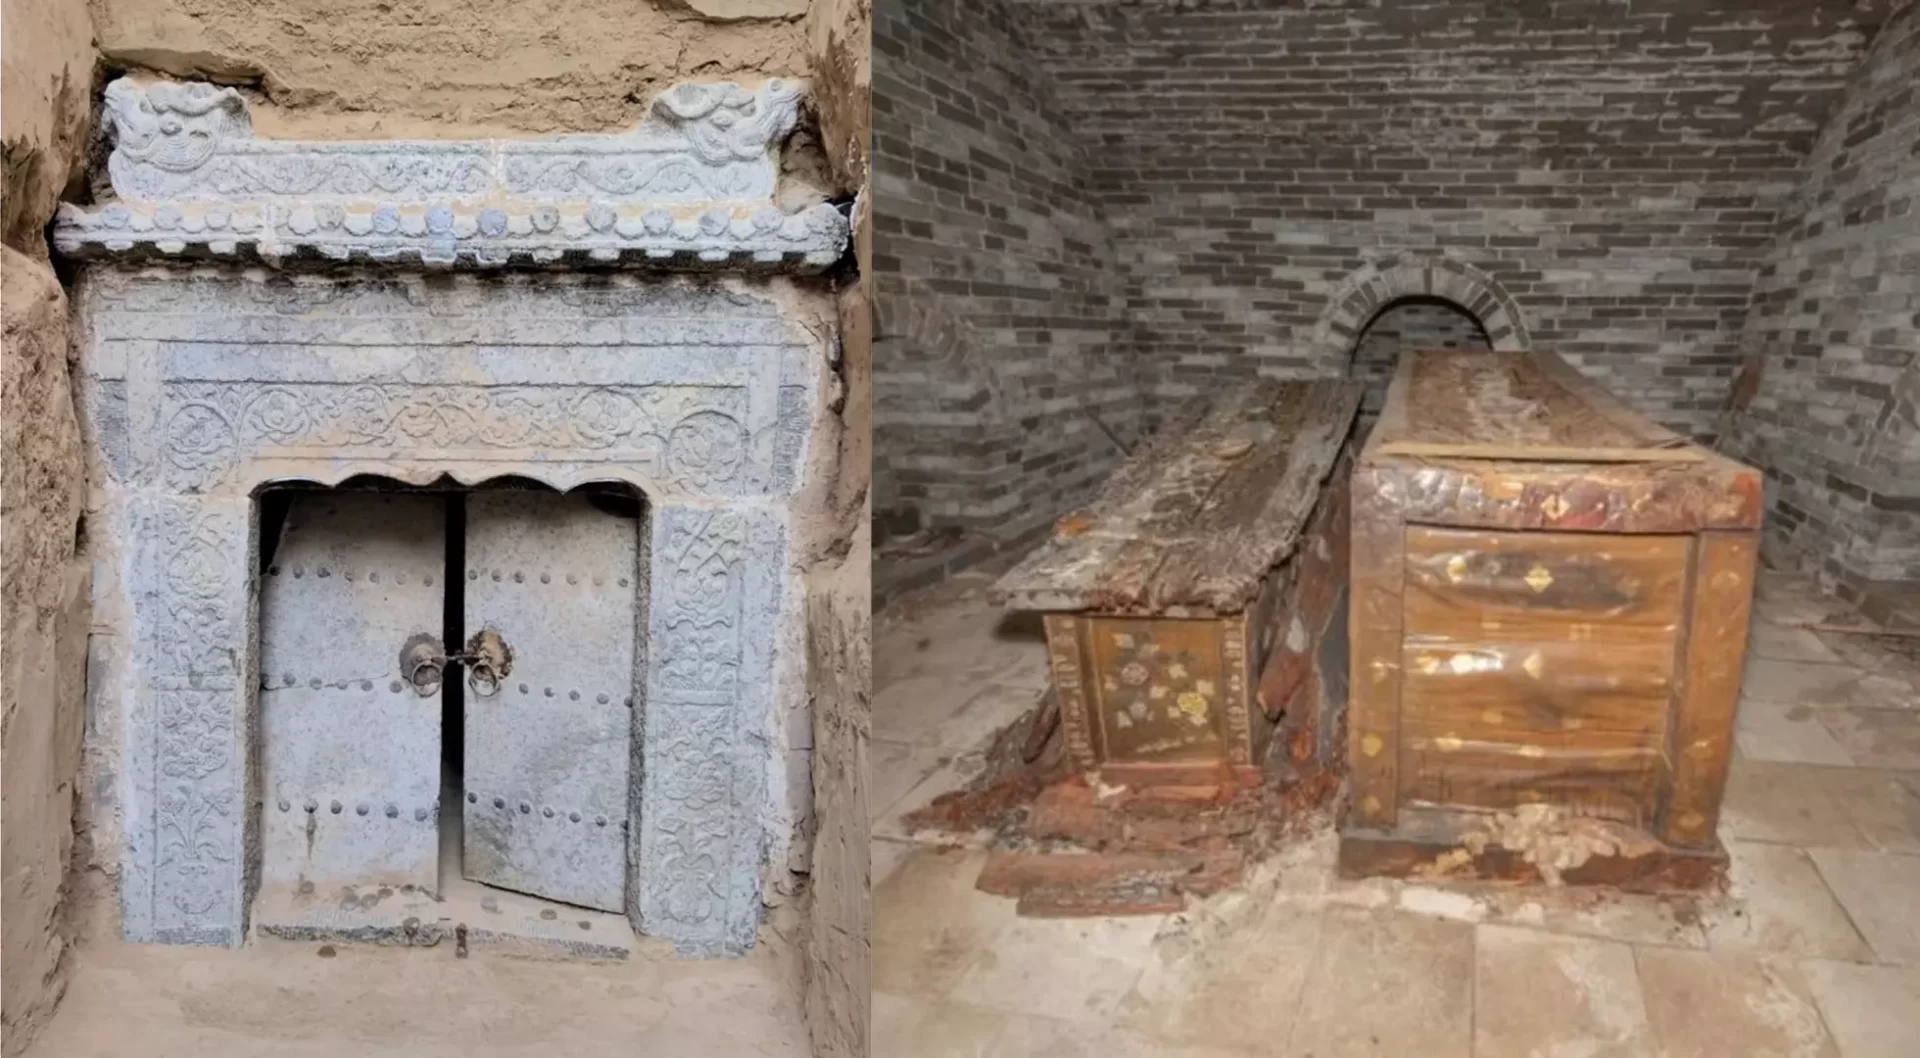 Izquierda: Puerta de la cripta en el distrito de Xinfu, China. Derecha: Los ataúdes.